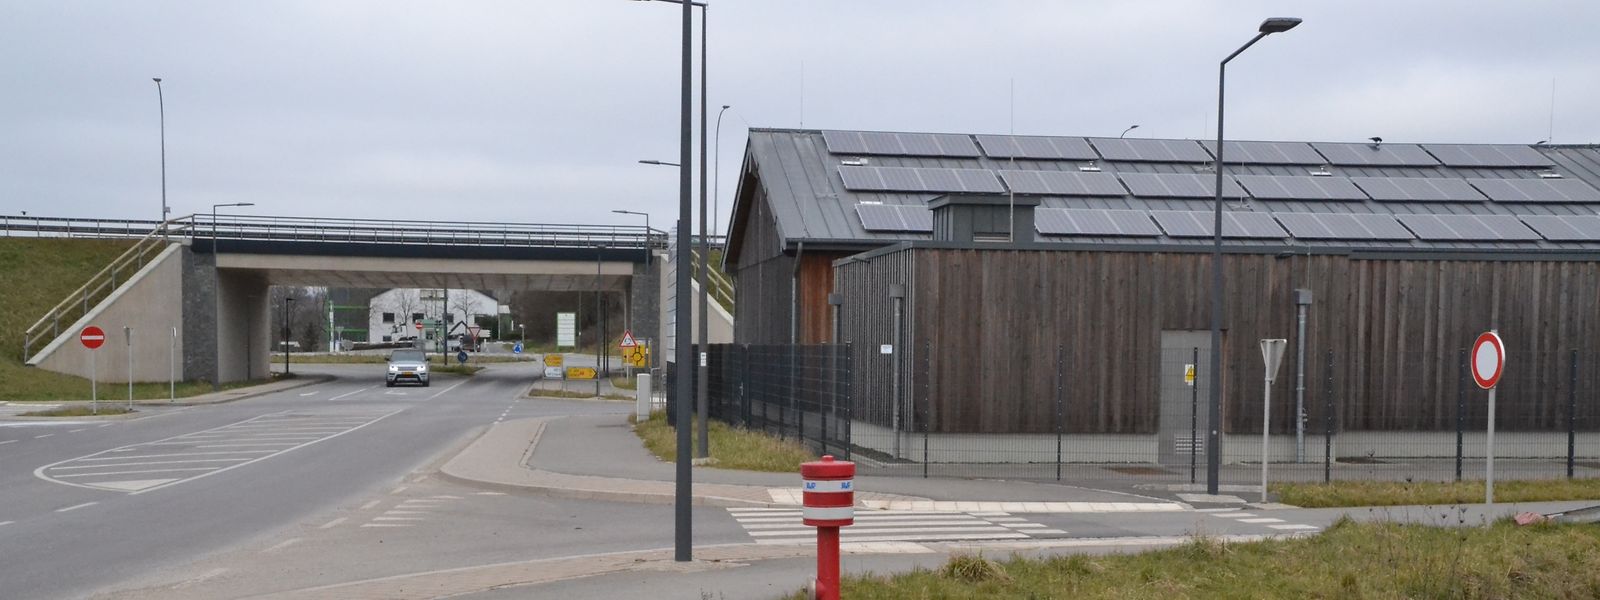 La bouche d'incendie marque la future entrée du CIS Nordstad. En arrière-plan, on peut voir le pont de la B7 à la zone industrielle du Fridhaff.